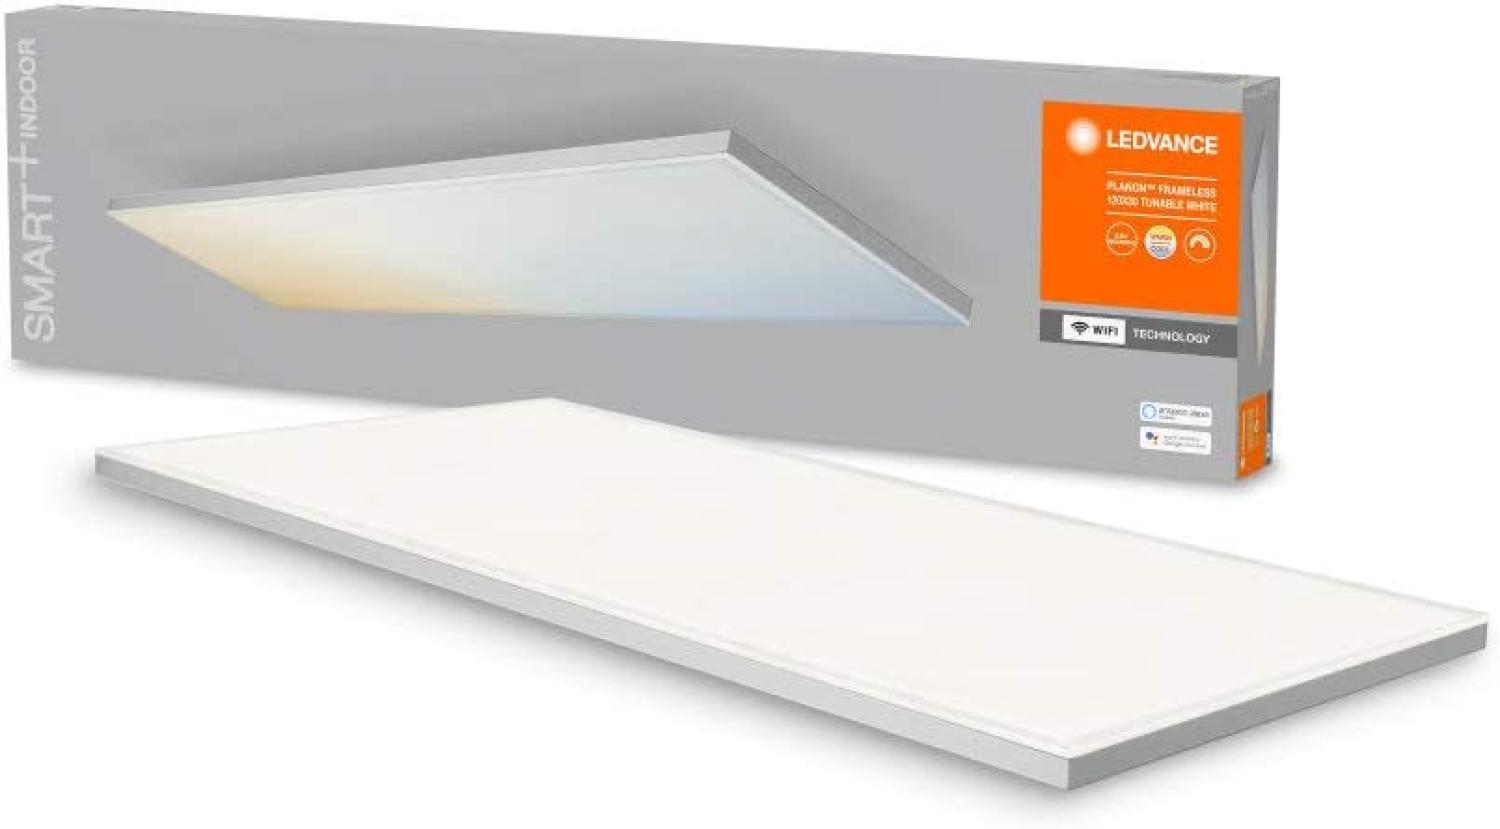 LEDVANCE Planon frameless rectangular smart CCT WIFI APP 12 Bild 1